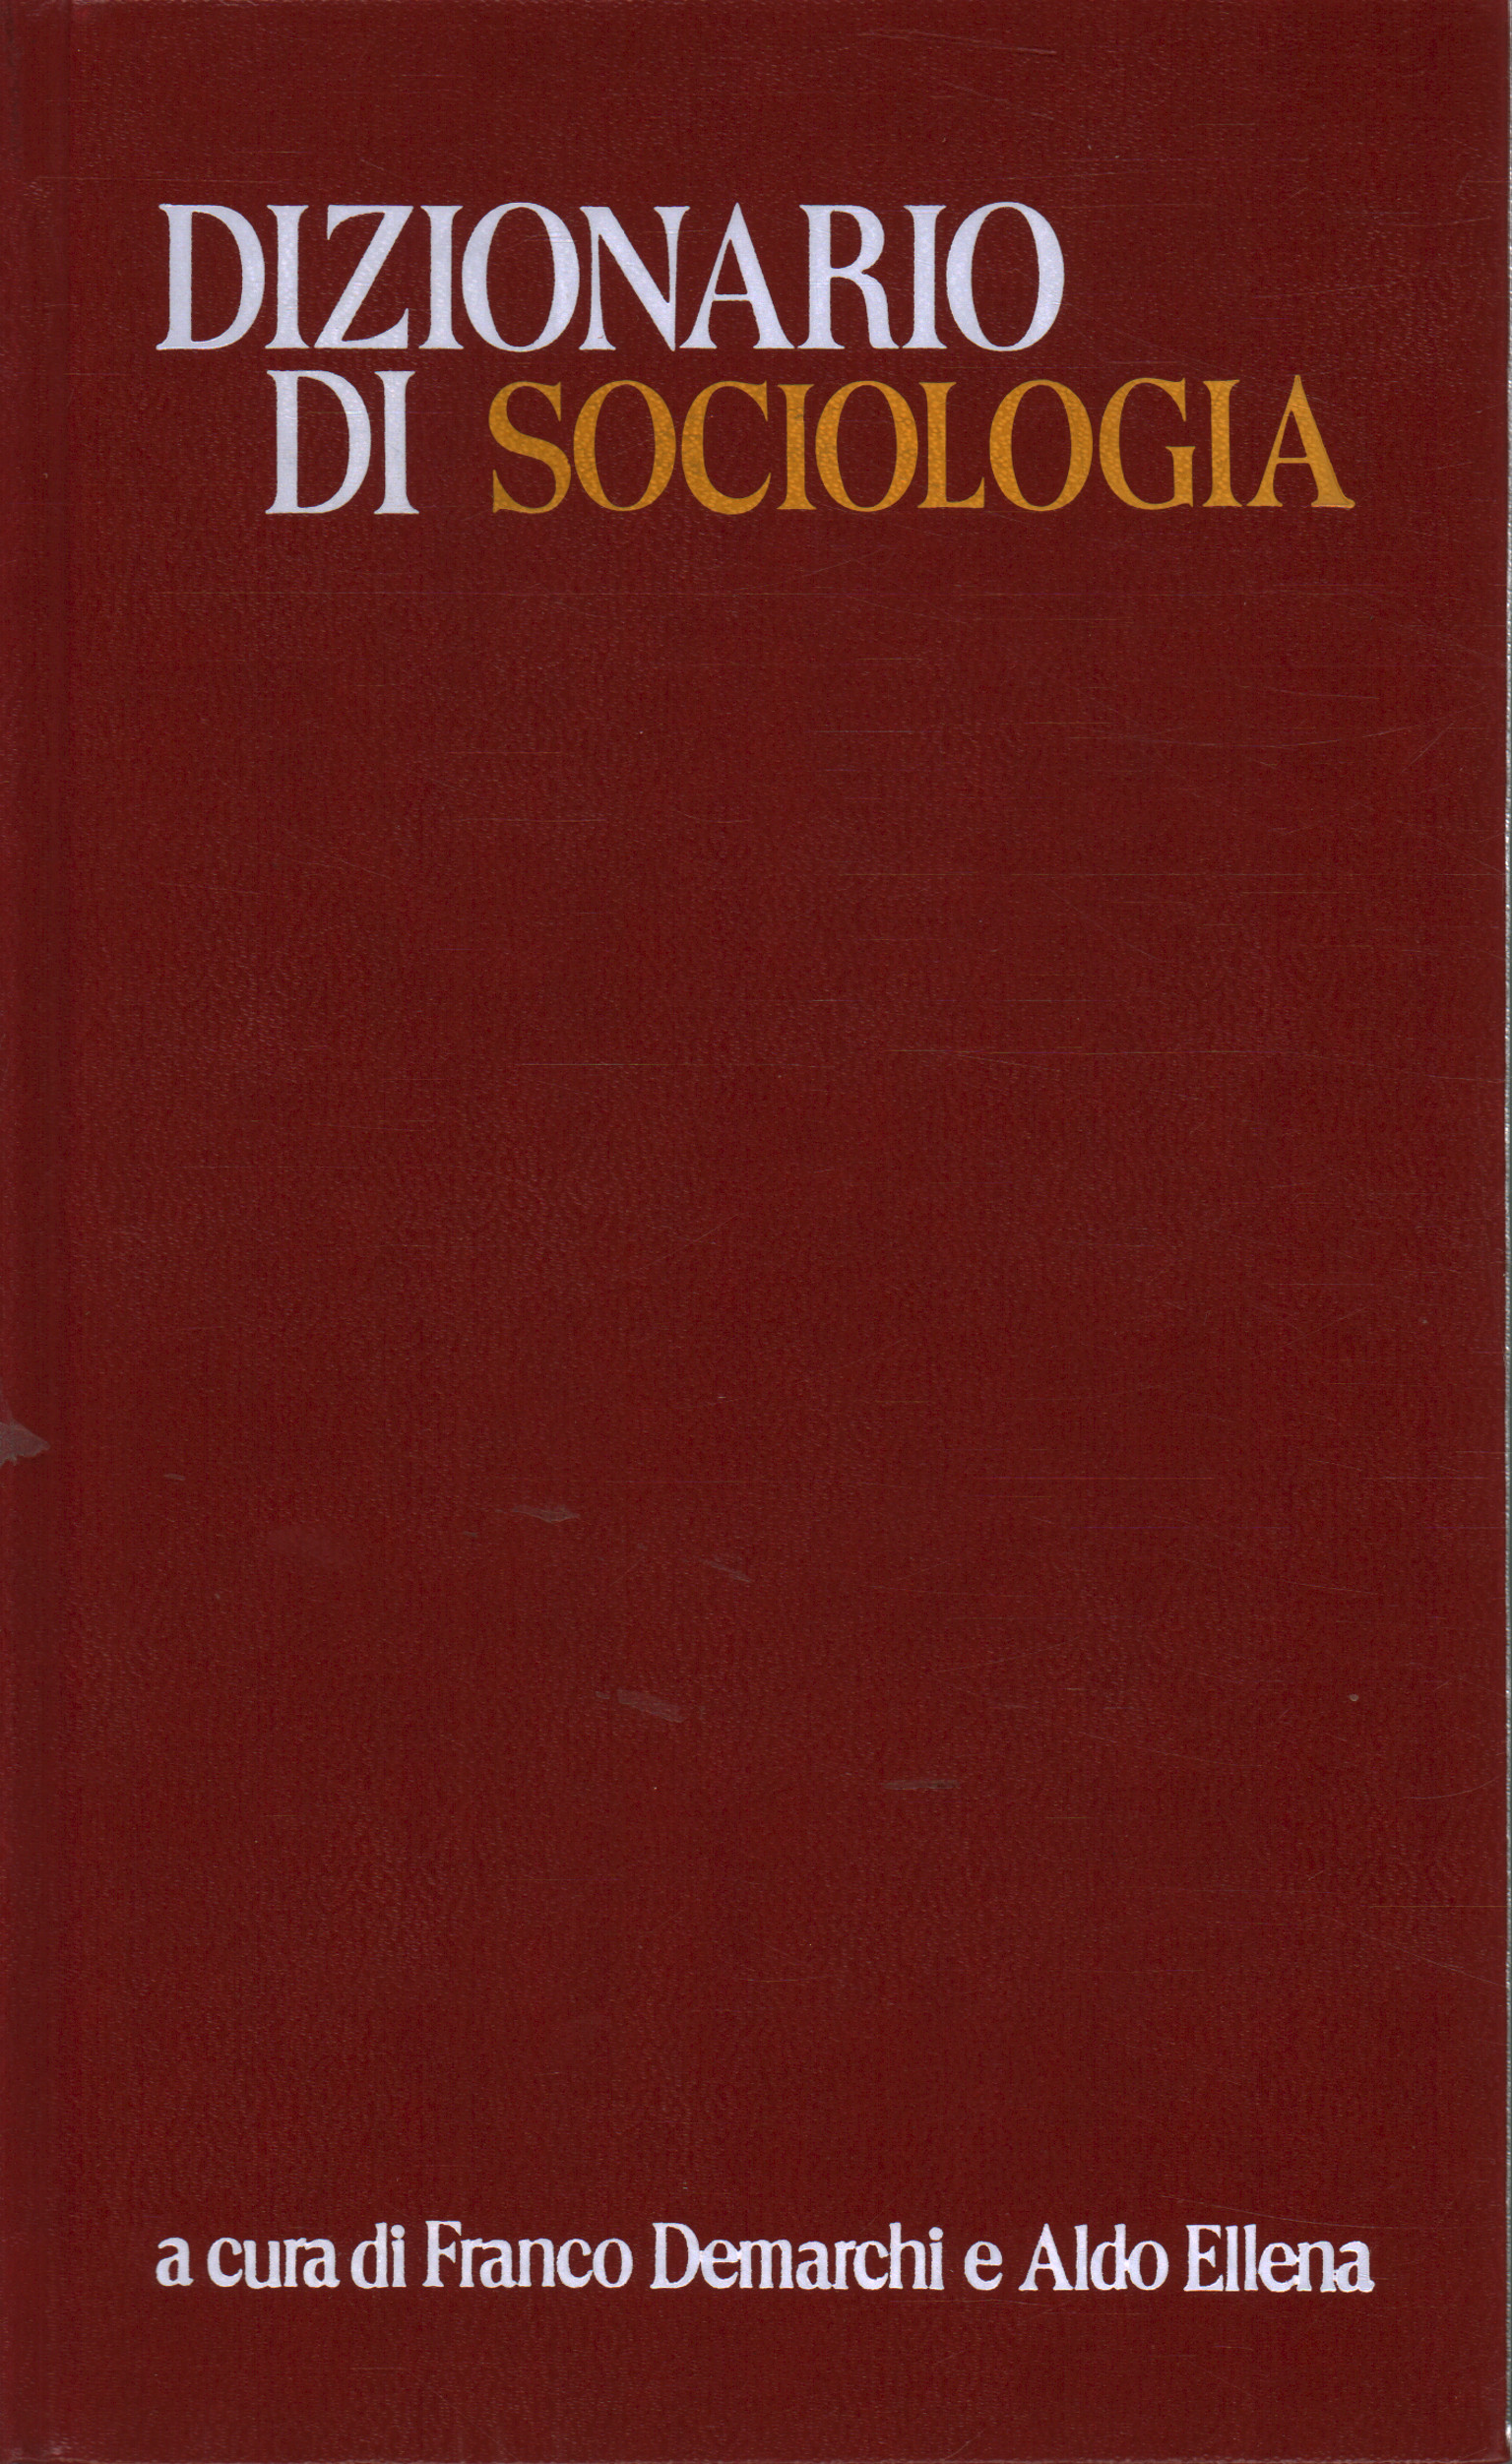 Dictionnaire de la sociologie, de la Franco Demarchi, Aldo Ellena